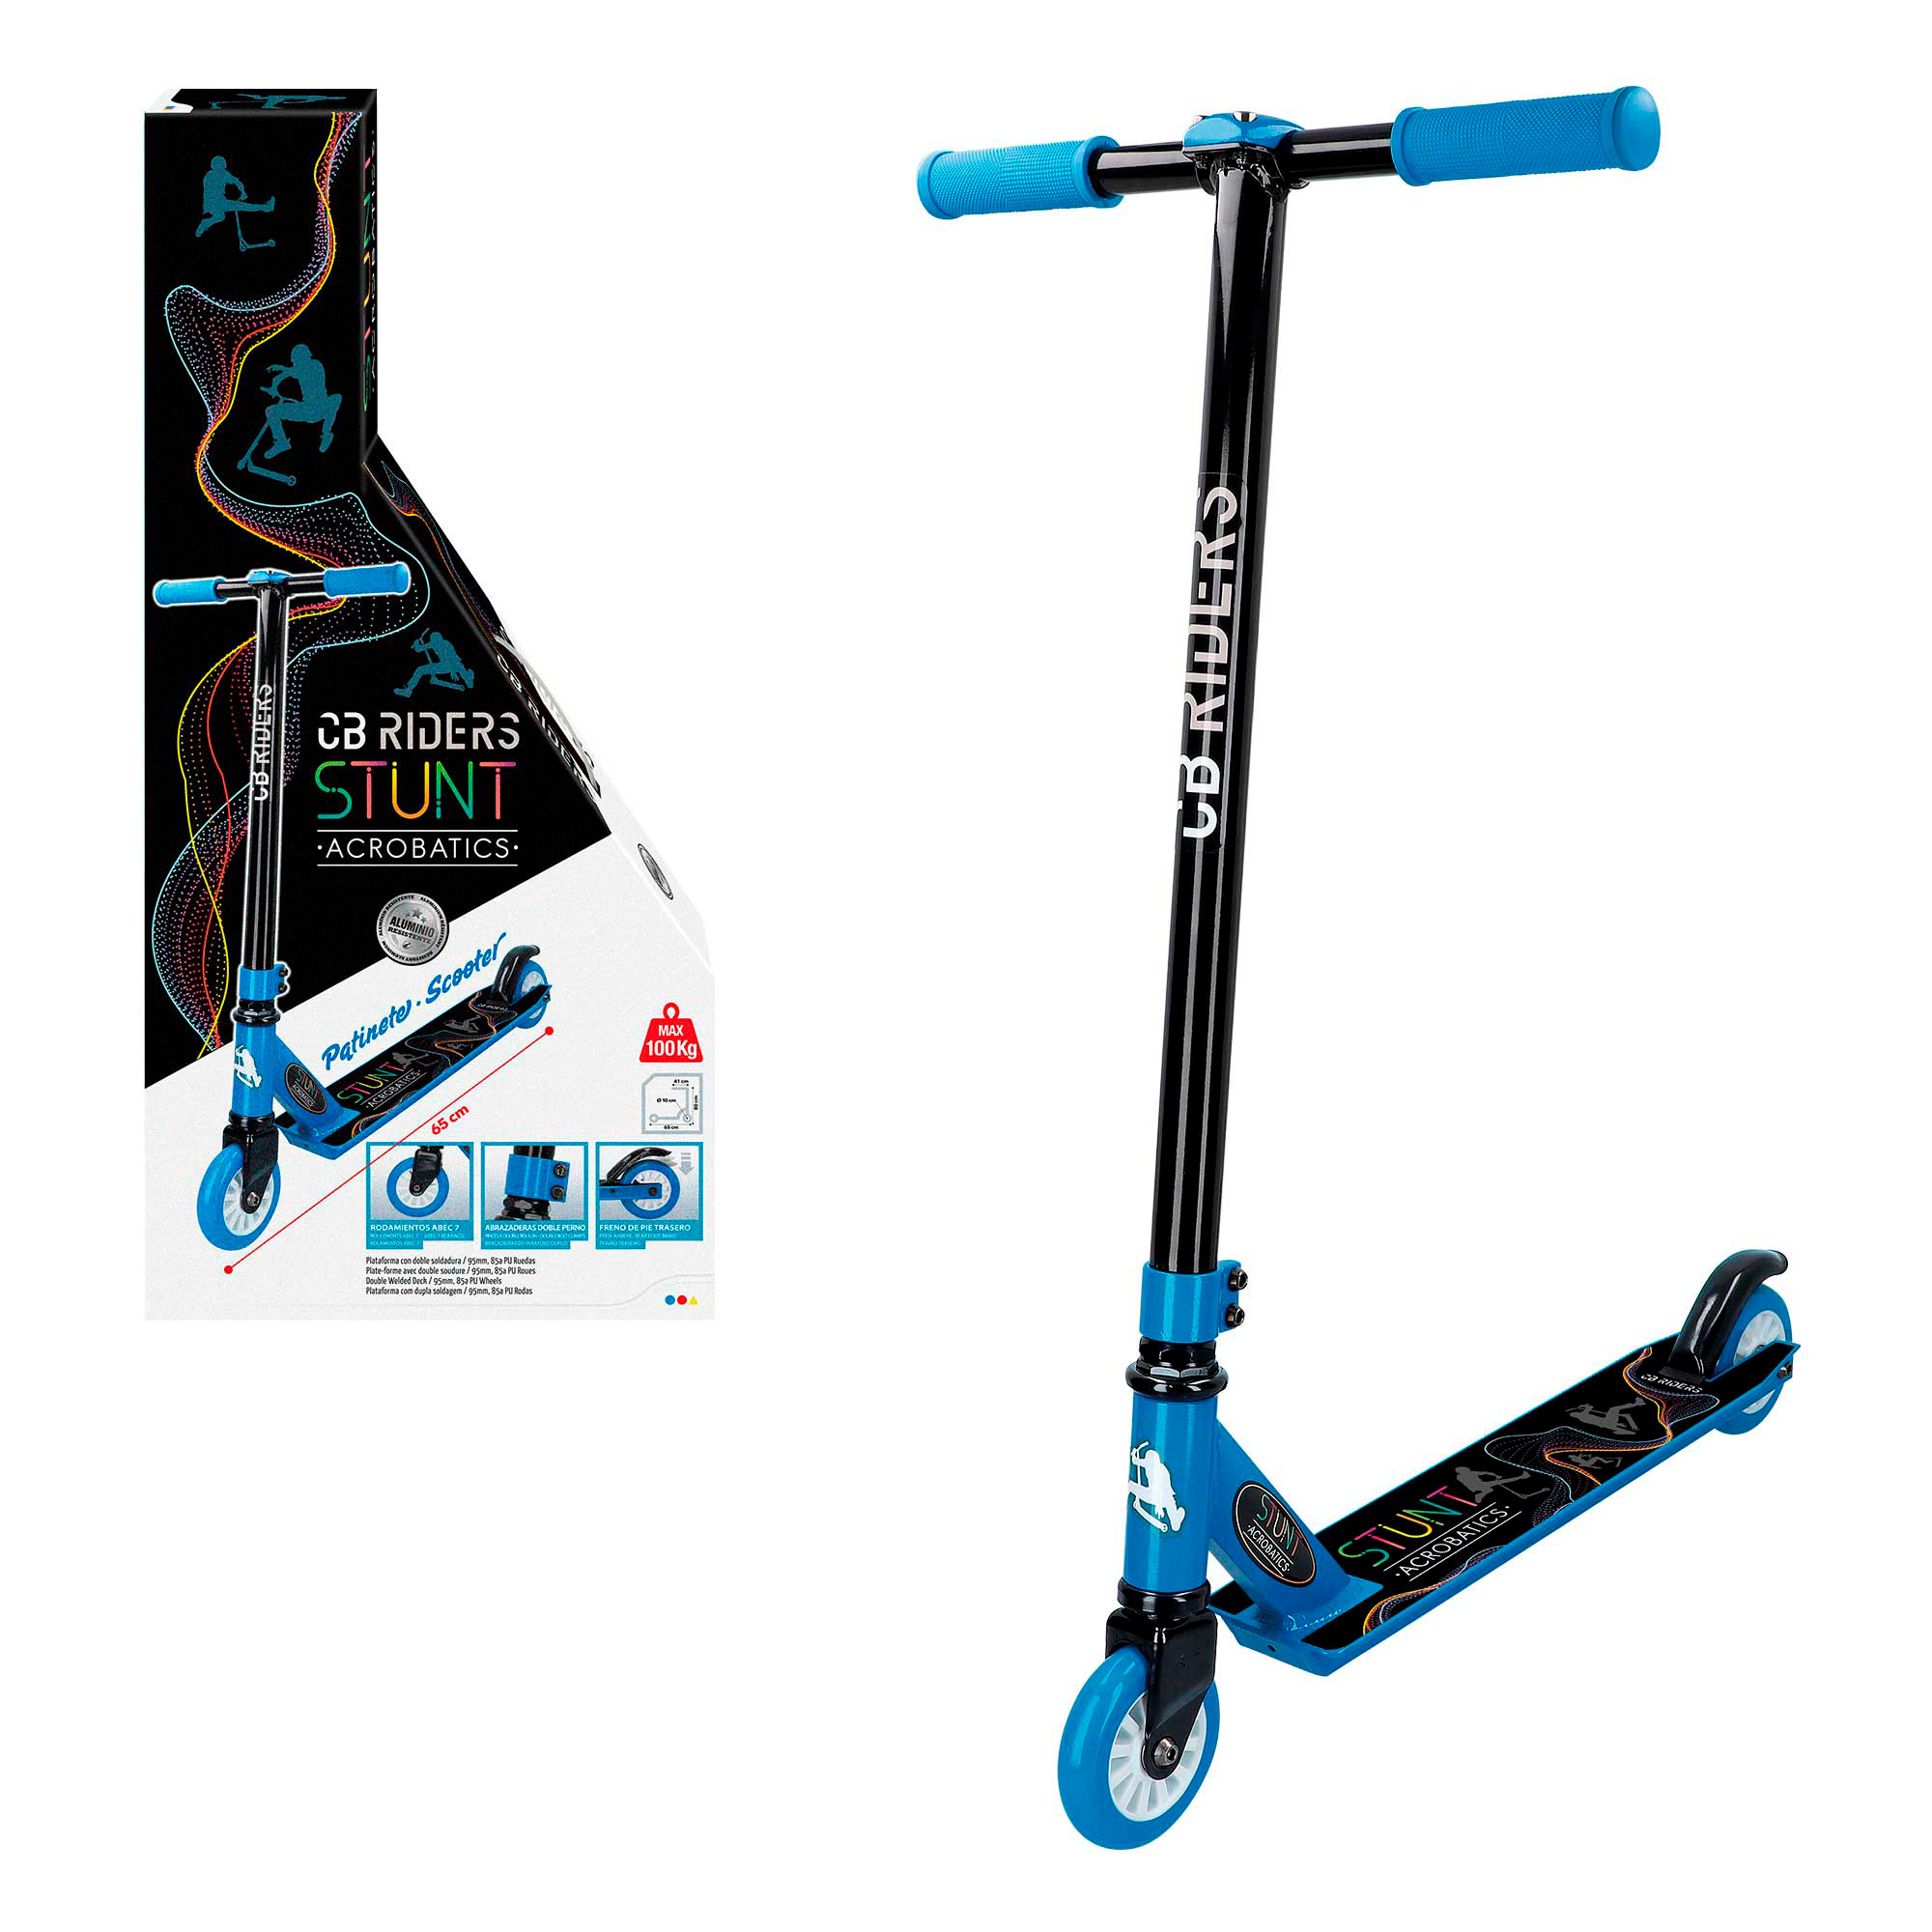 Cb Toys - Patinete 2 ruedas acrobático azul CB Riders